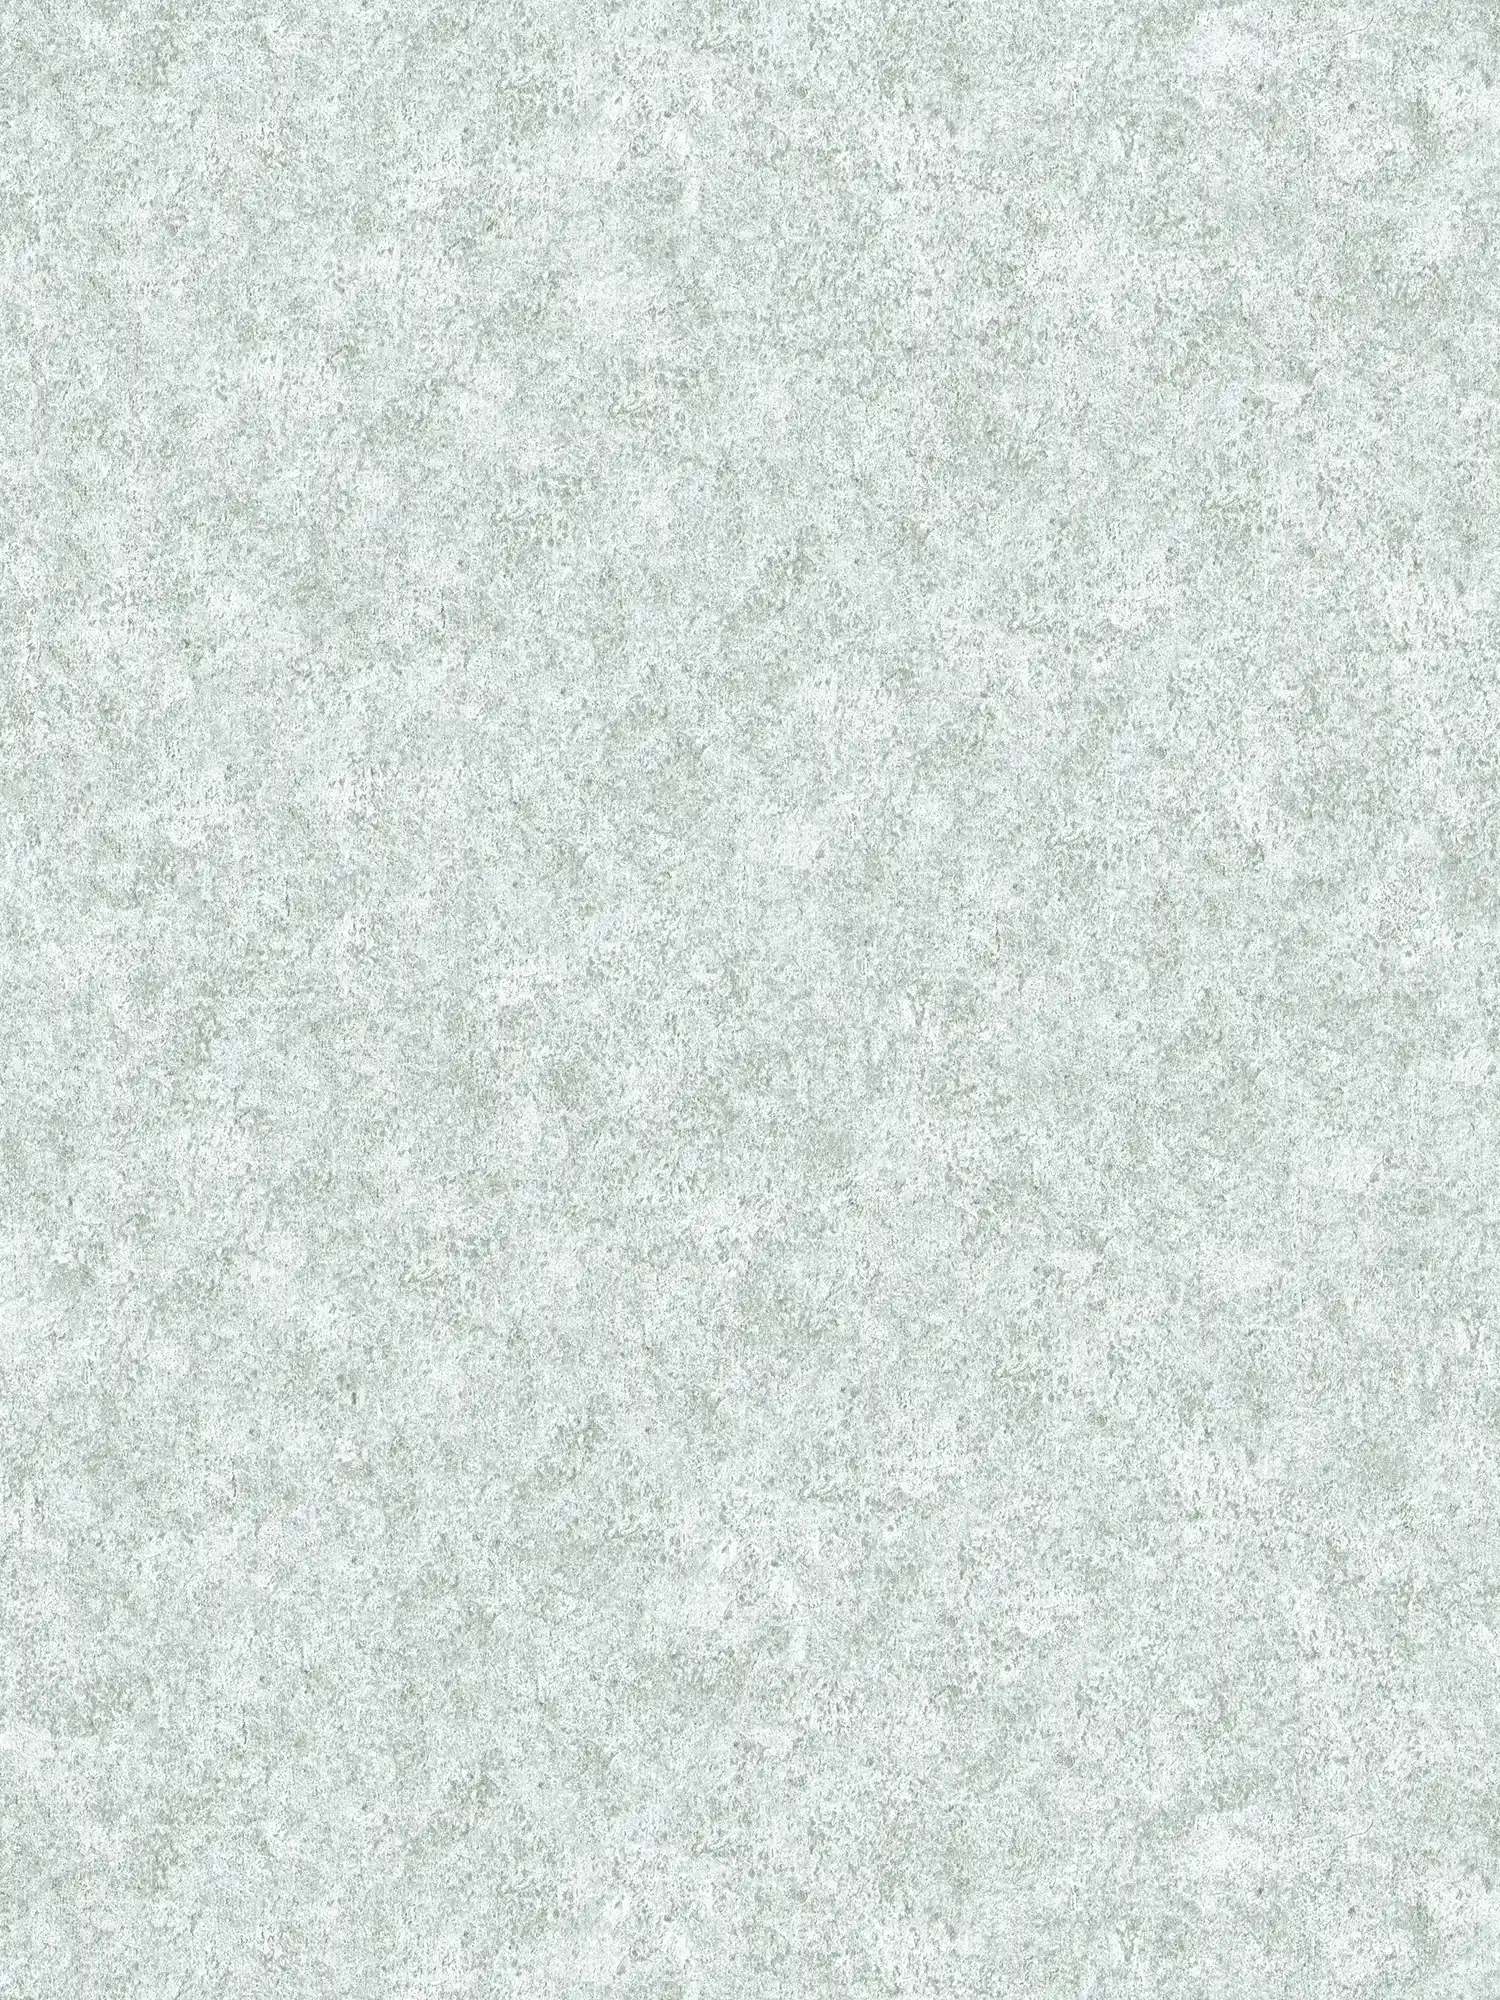         Melierte Tapete Grau mit marmorierter Steinoptik
    